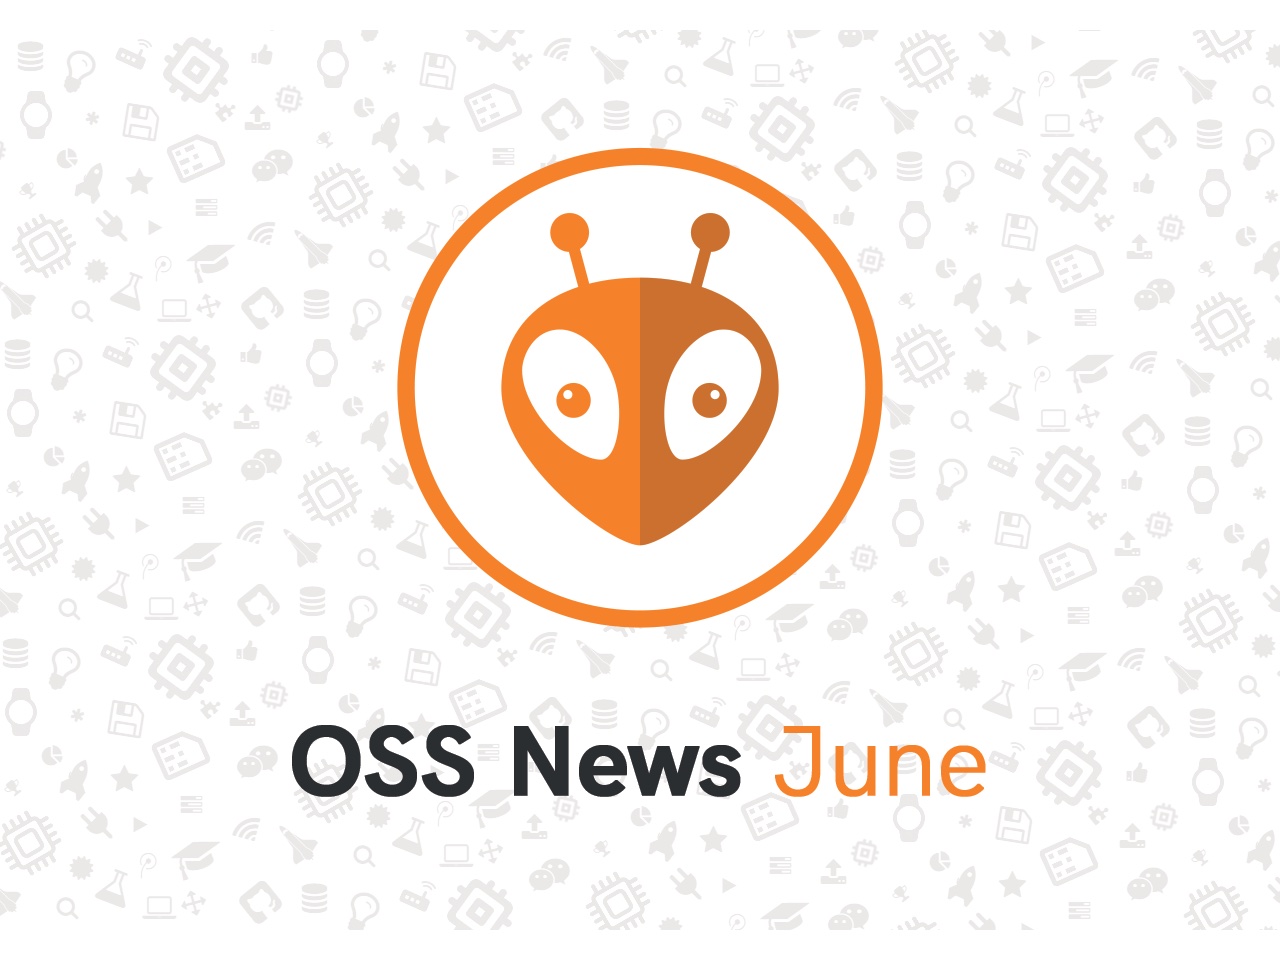 PlatformIO Open Source June Updates